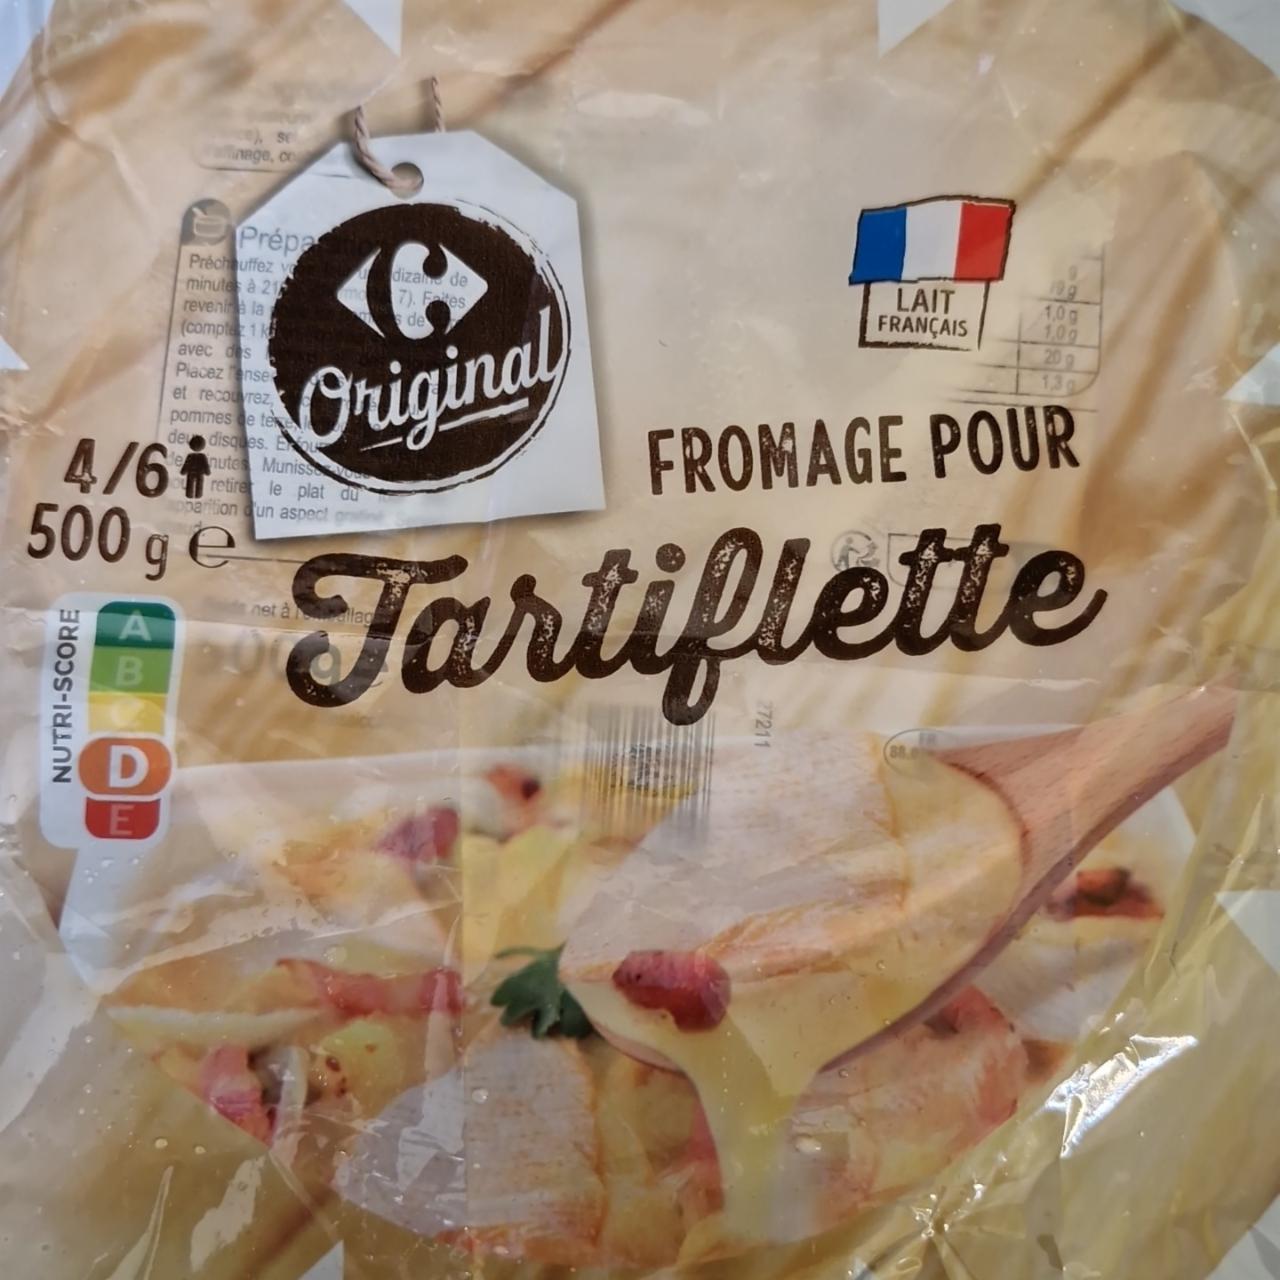 Fotografie - Fromage pour tartiflette Carrefour Original